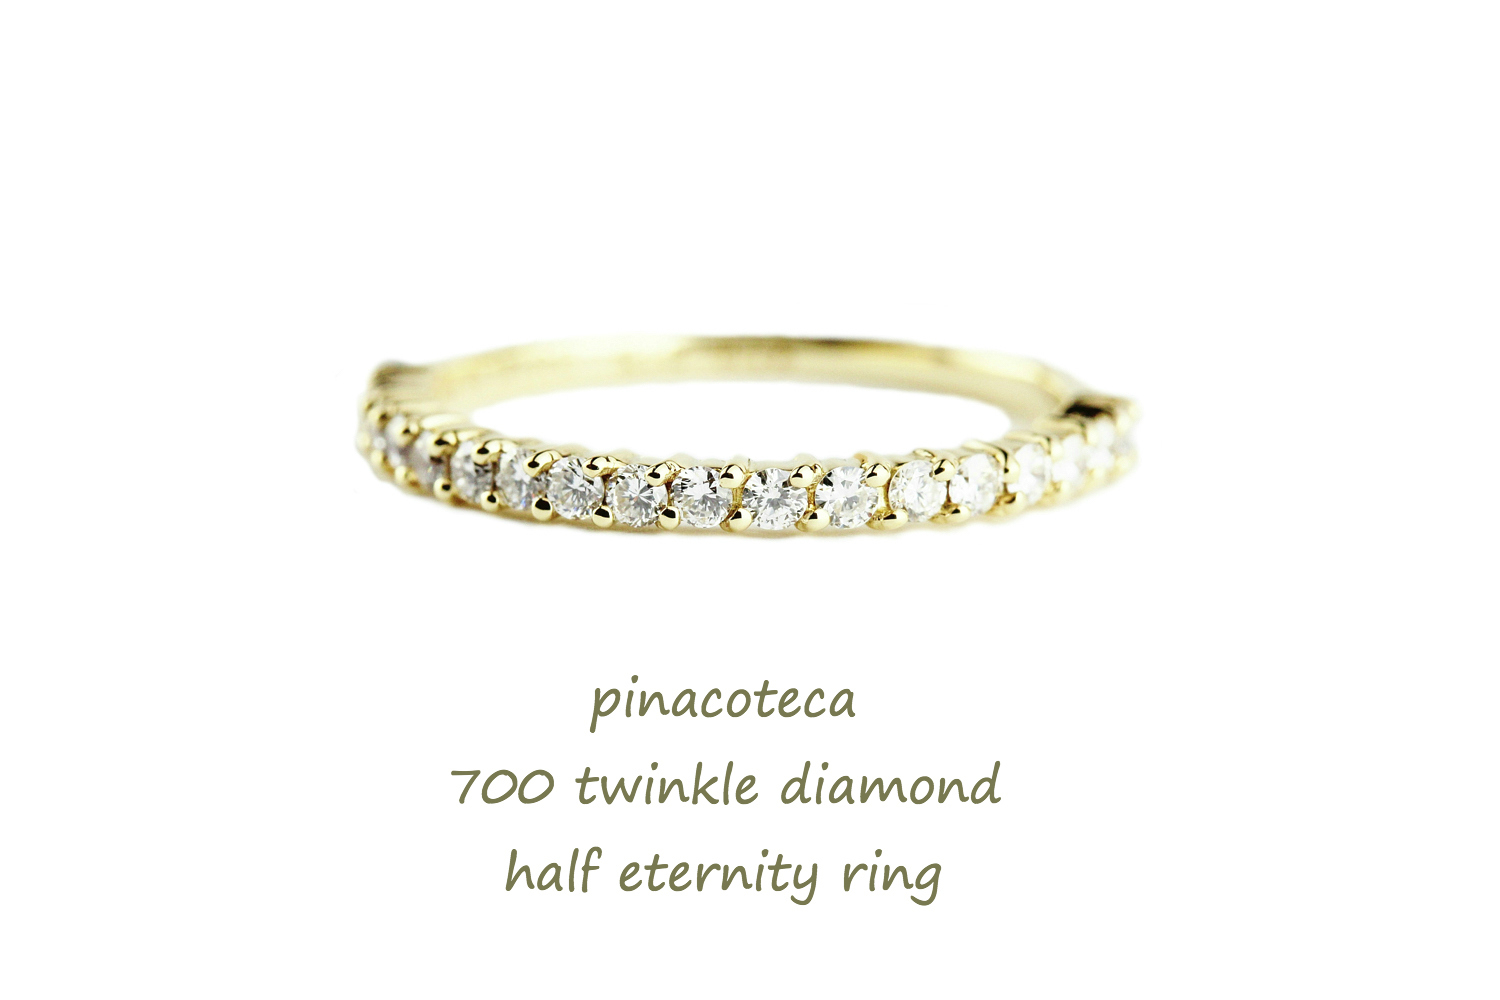 ピナコテーカ 700 トゥウィンクル　ダイヤモンド ハーフエタニティ リング 18金,pinacoteca Twinkle Diamond Half Eternity Ring K18